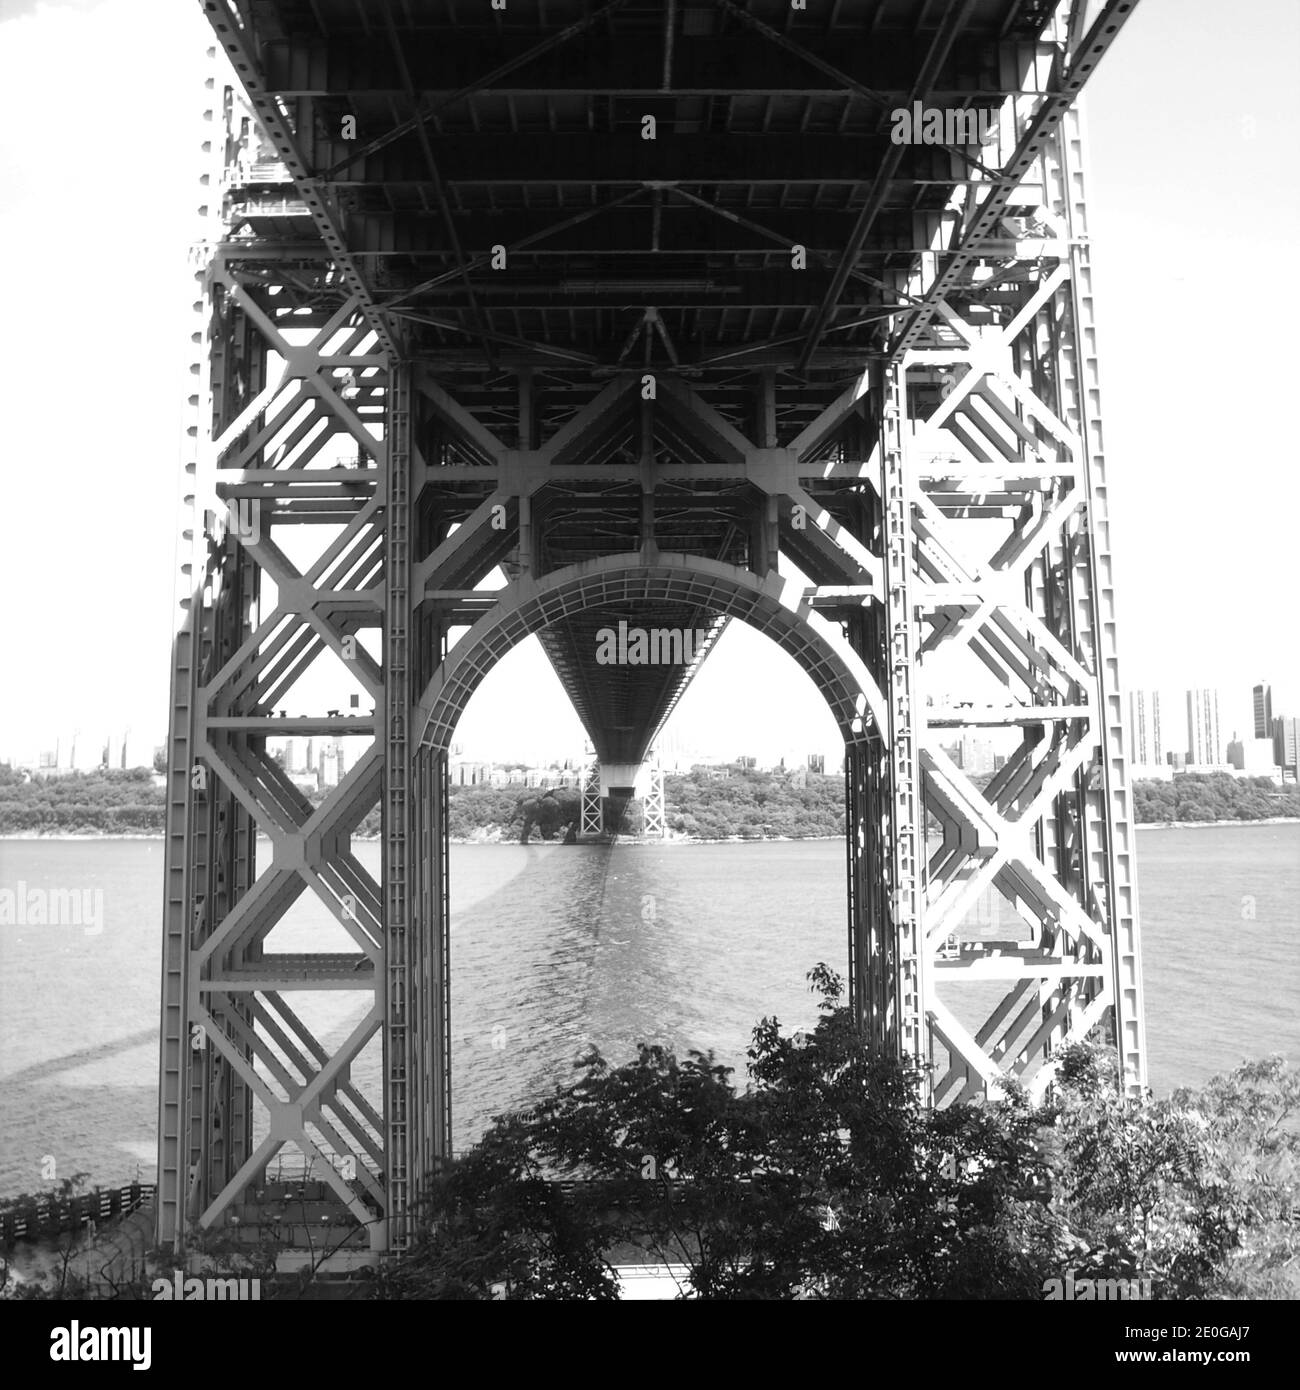 Le légendaire pont George Washington de la ville de New York, au-dessus de l'Hudson River, entre fort Lee, New Jersey et le Bronx à New York. Ouvert en 1931. Banque D'Images